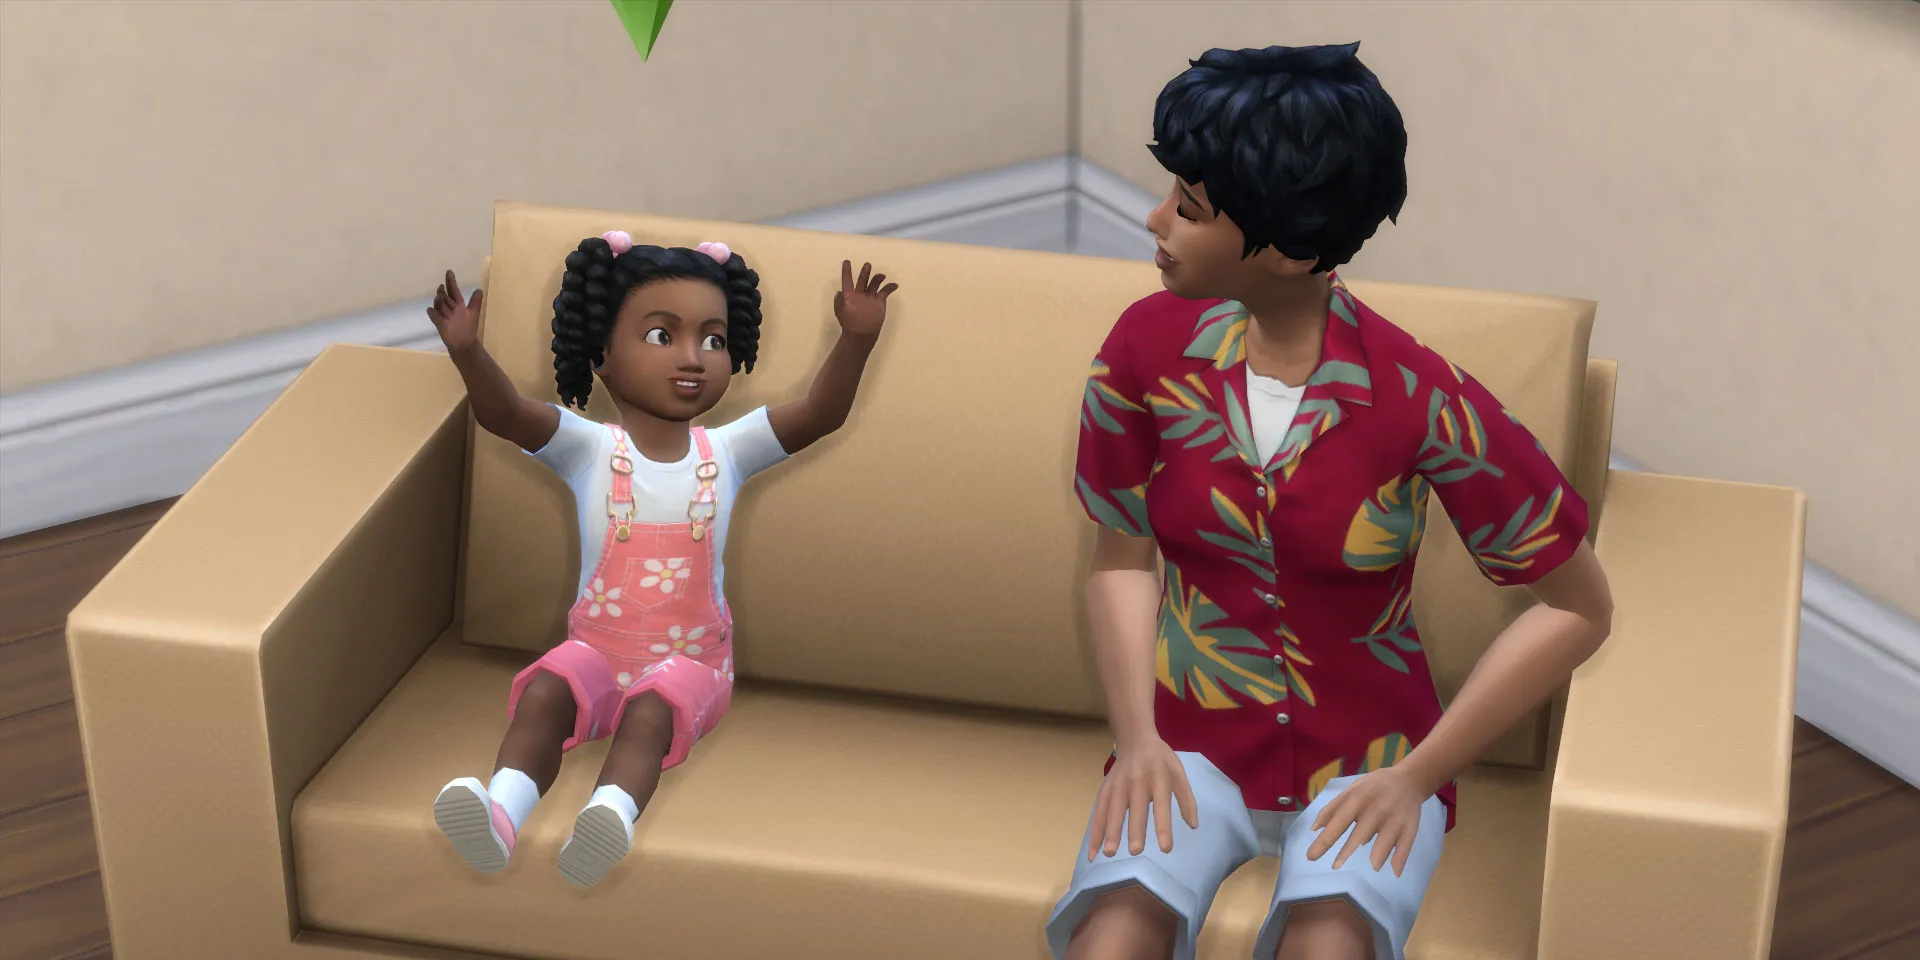 在《模拟人生4》中，一个幼儿模拟人物坐在沙发上与她的妈妈说话。